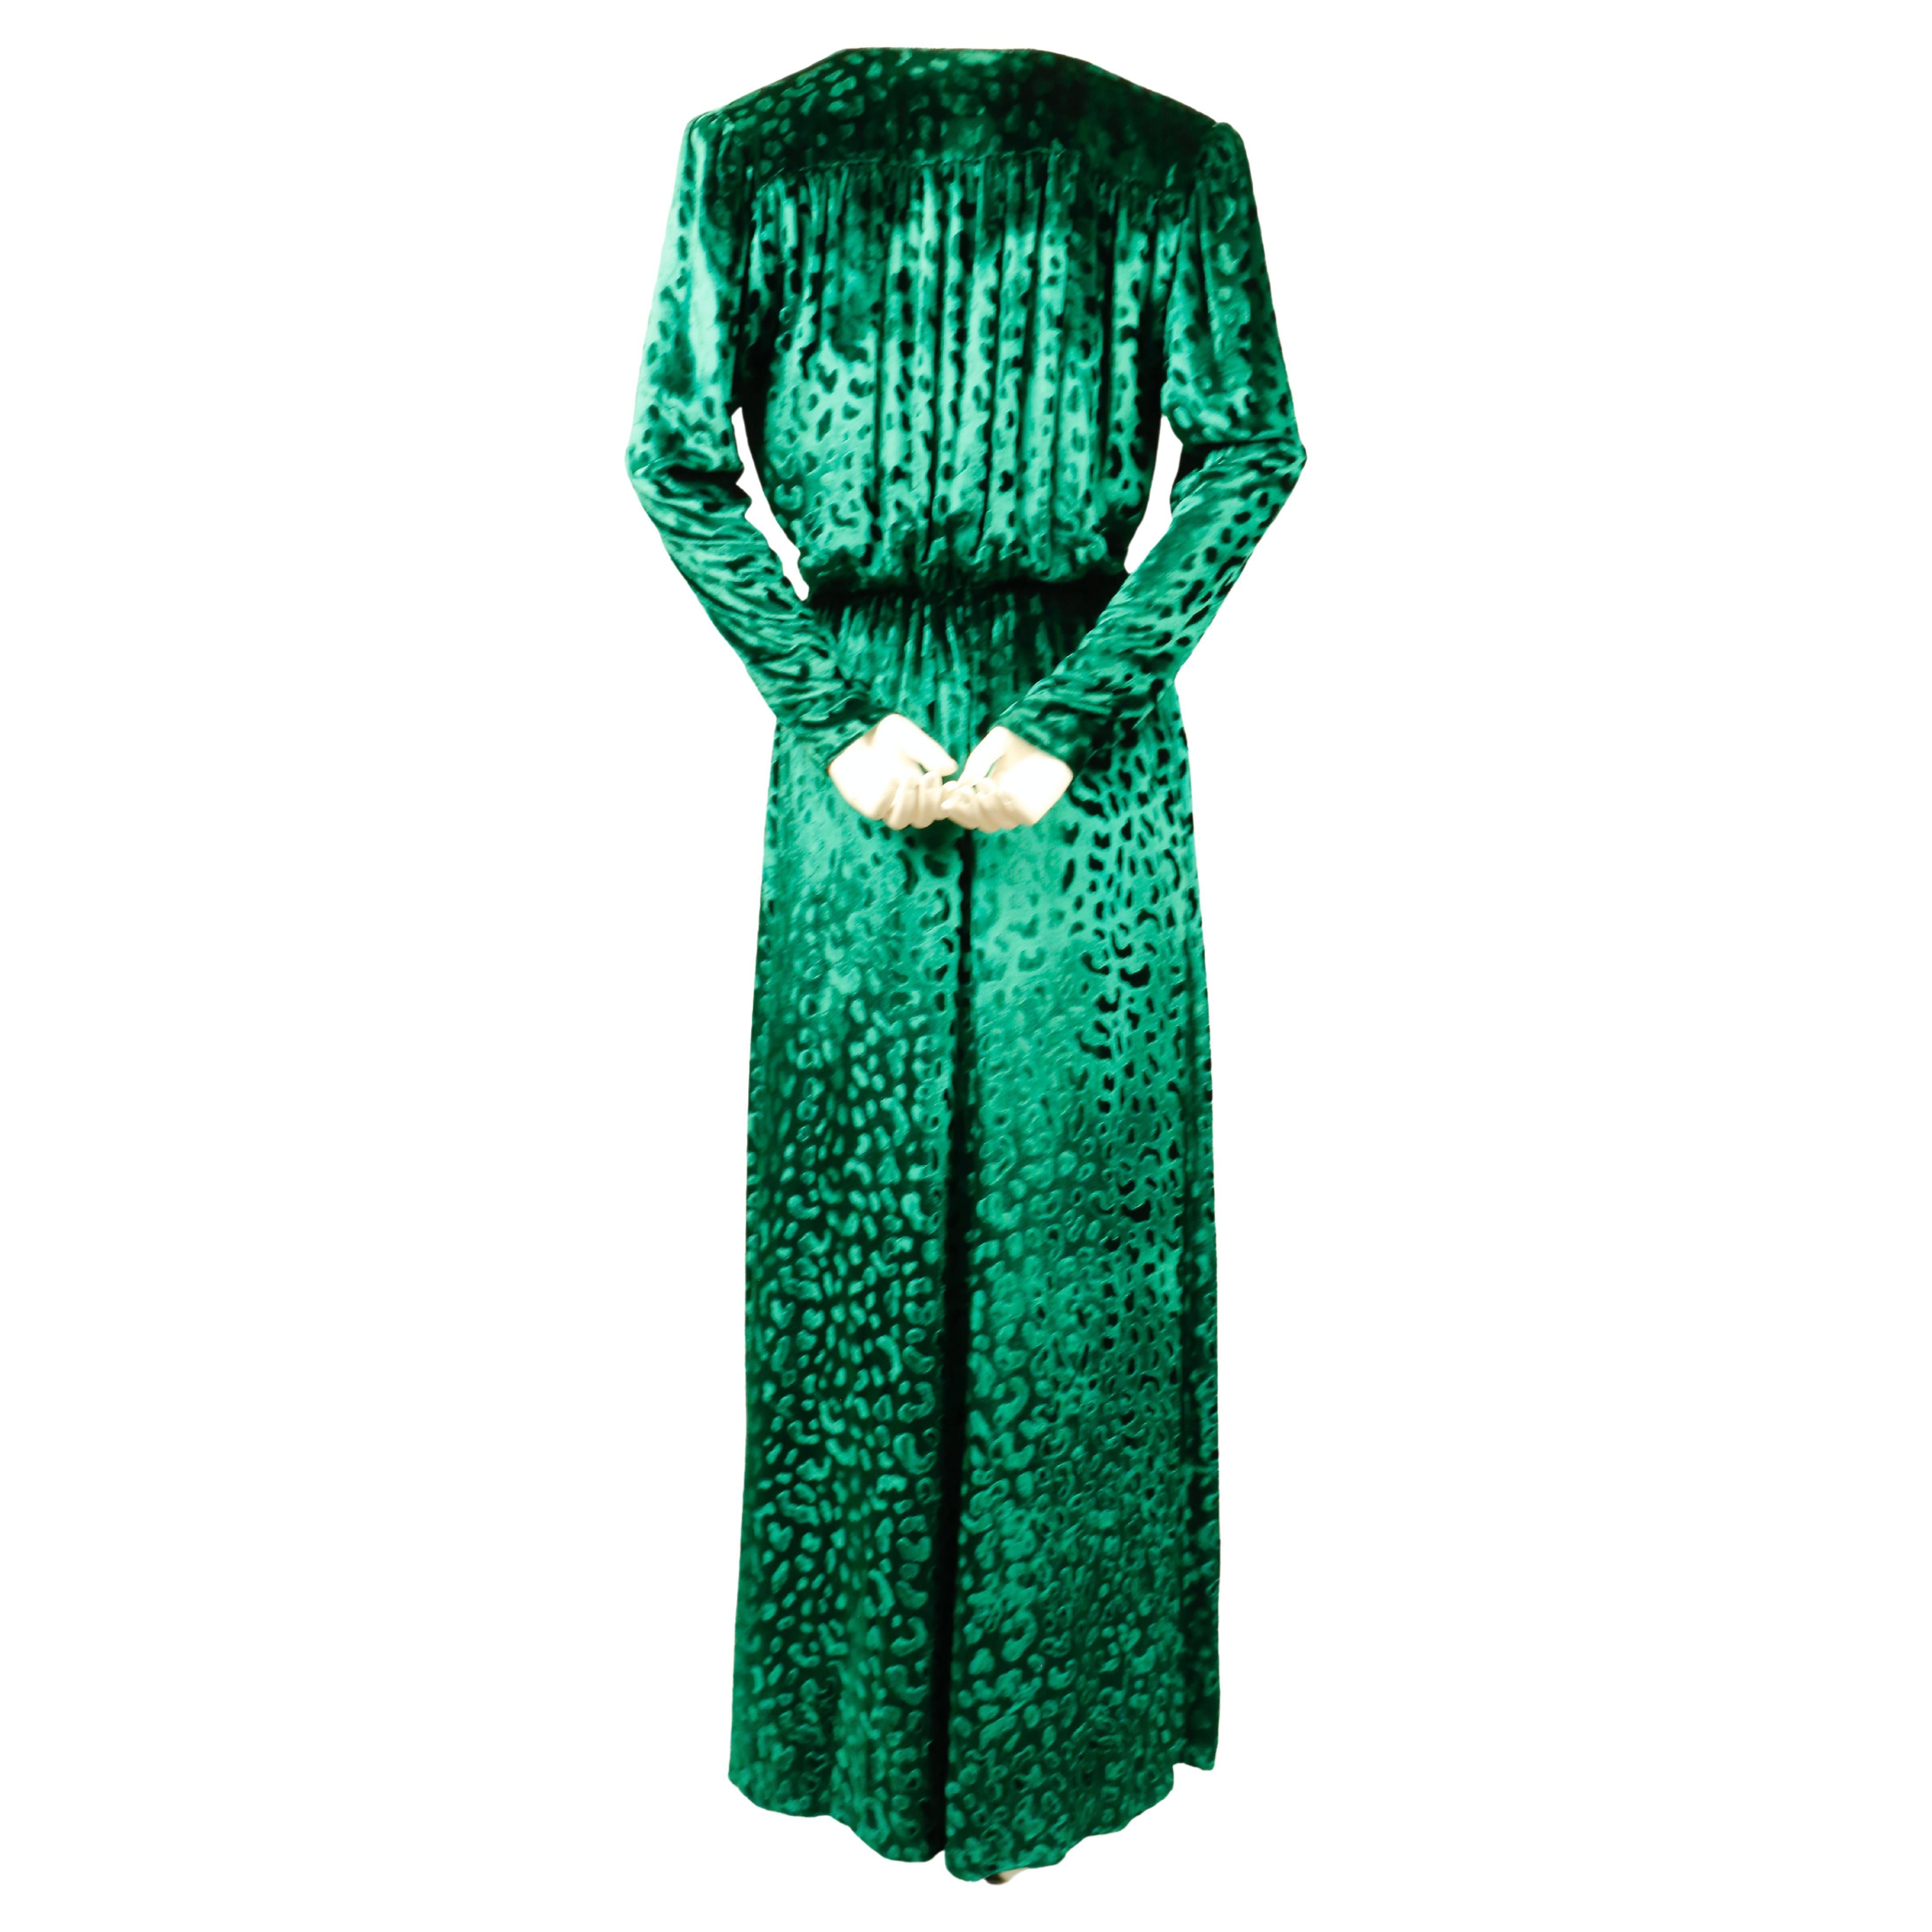 yves saint laurent green dress